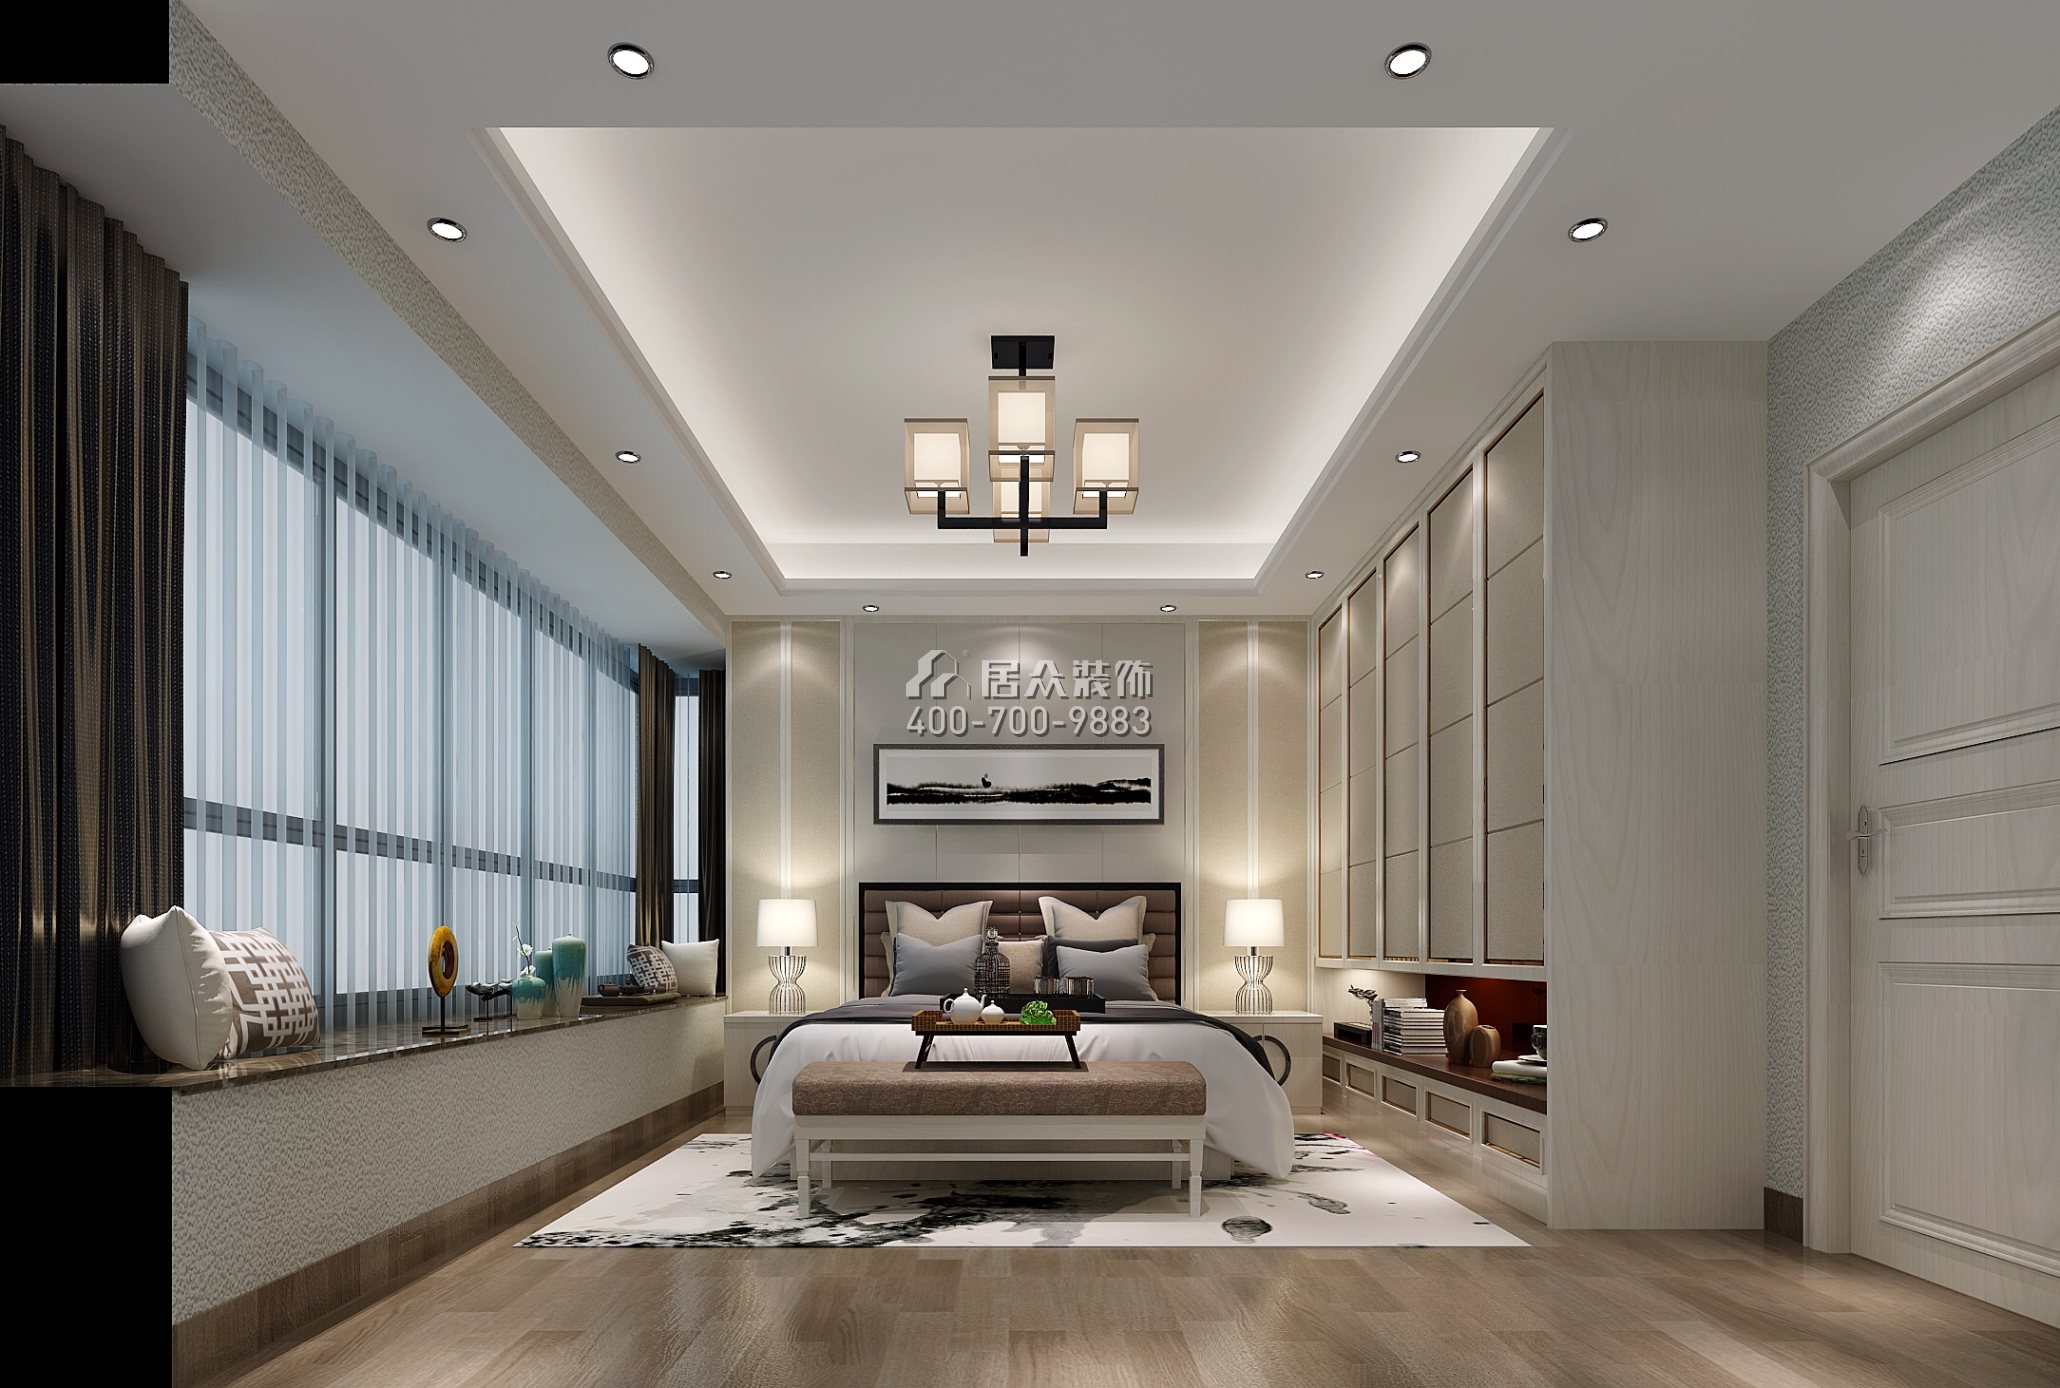 嘉都汇120平方米新古典风格平层户型卧室装修效果图